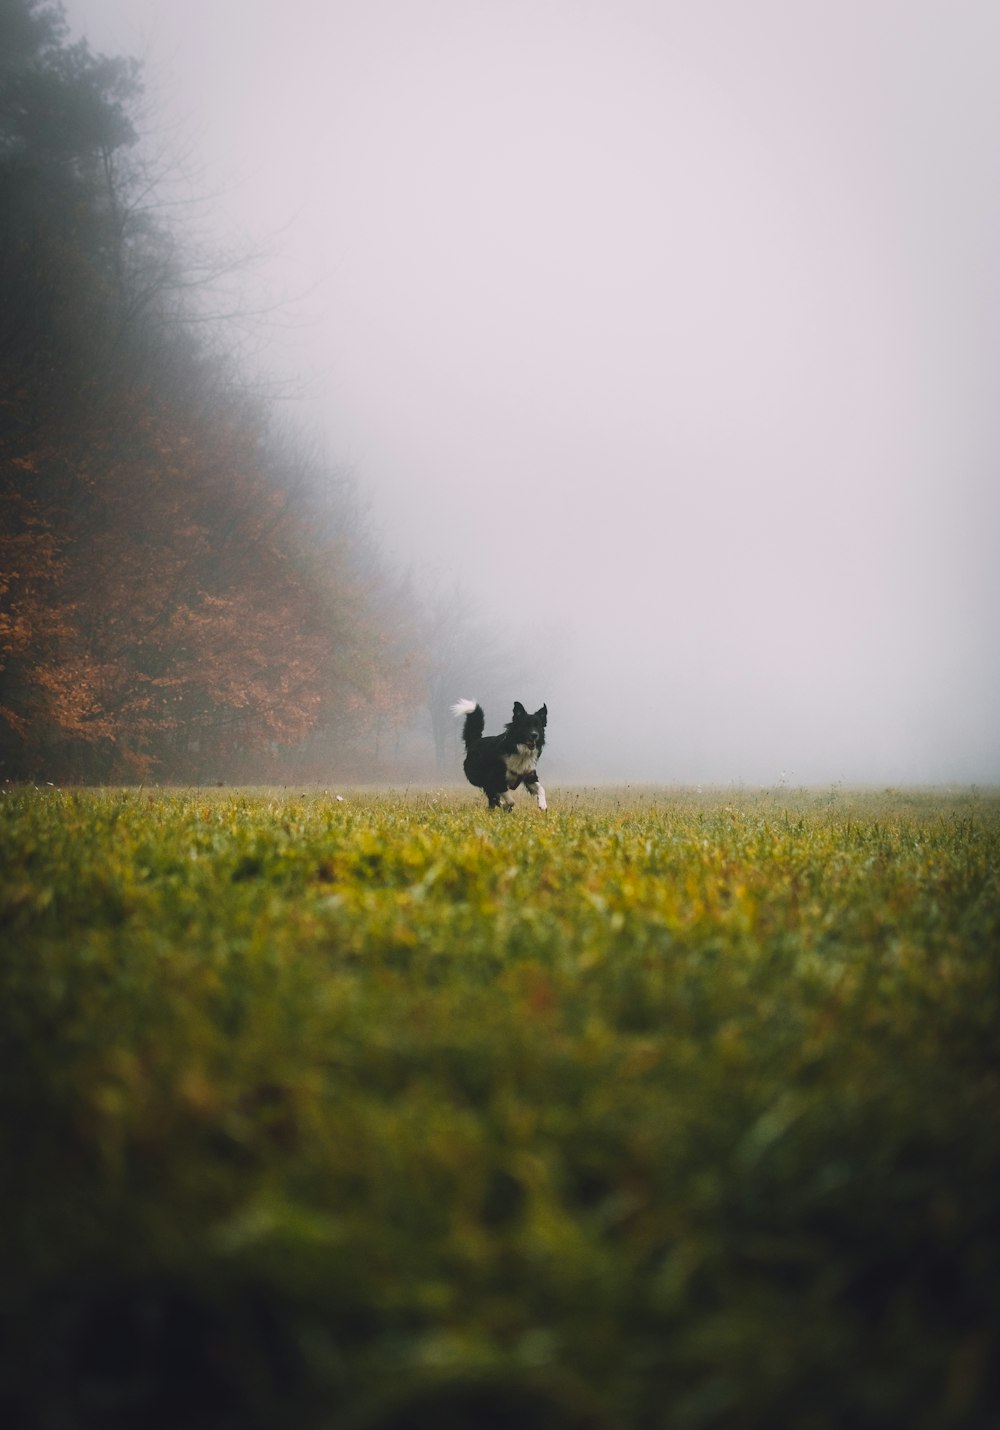 Un cane che corre attraverso un campo nebbioso